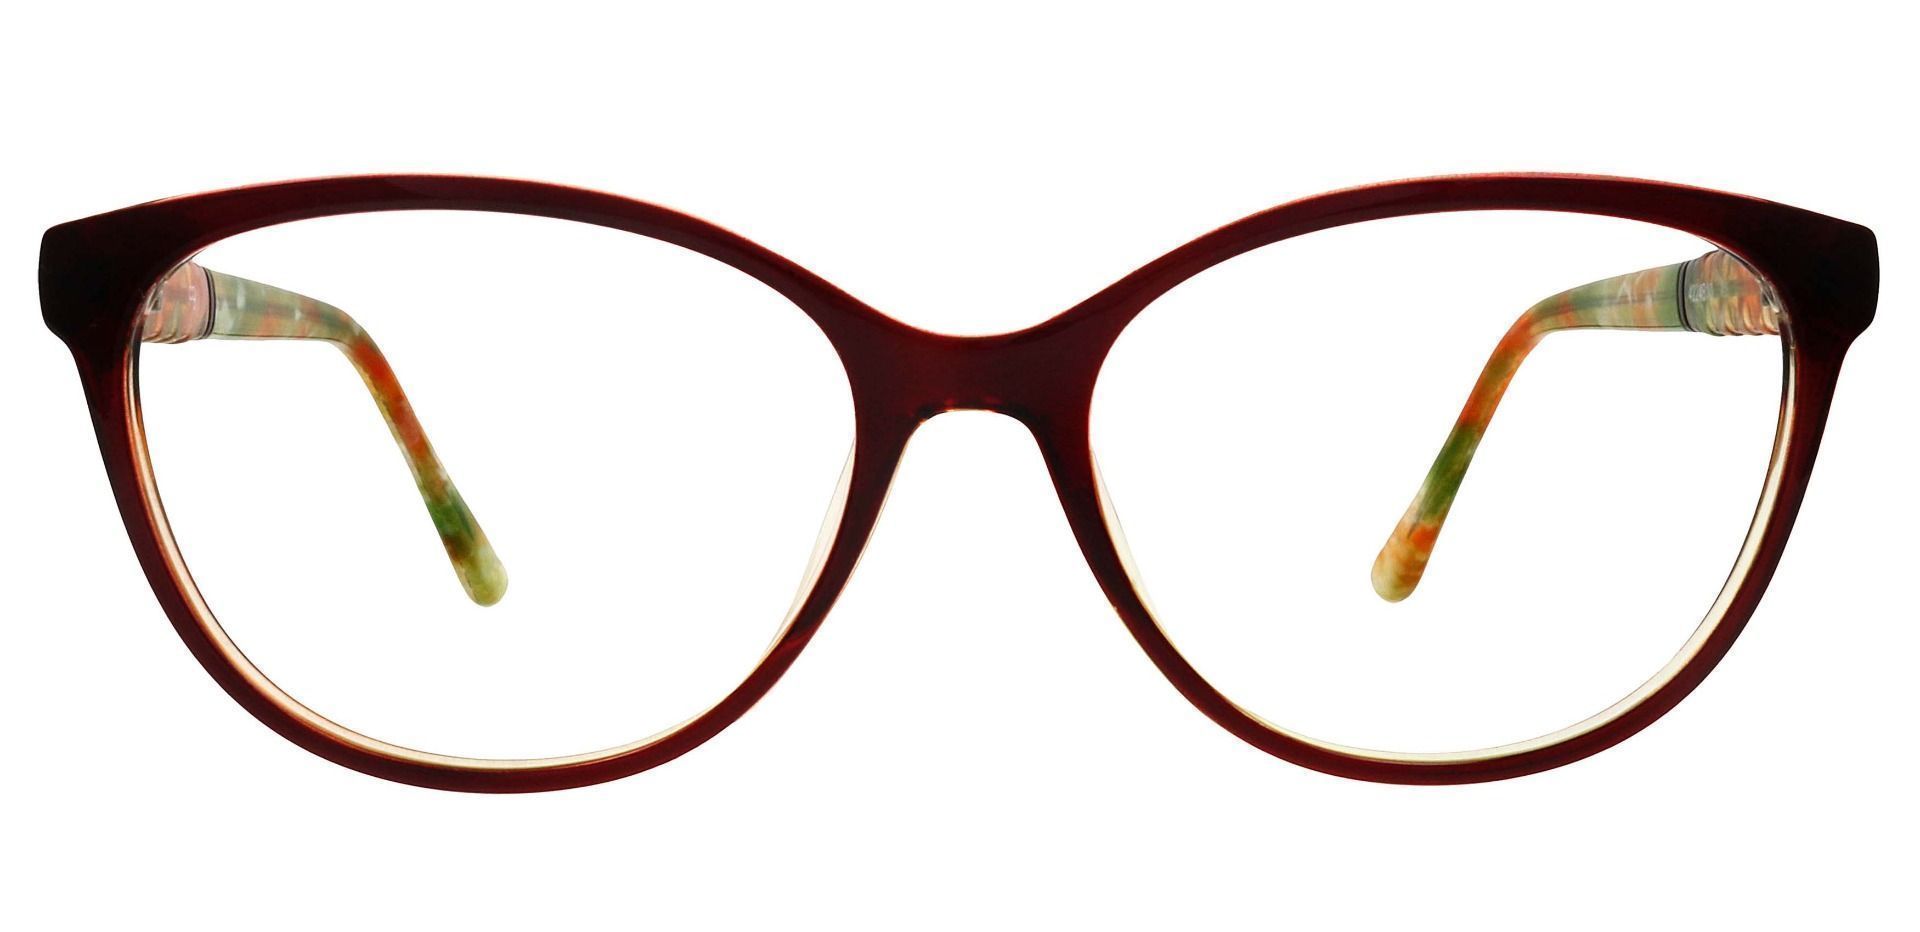 Wisteria Oval Prescription Glasses - Brown